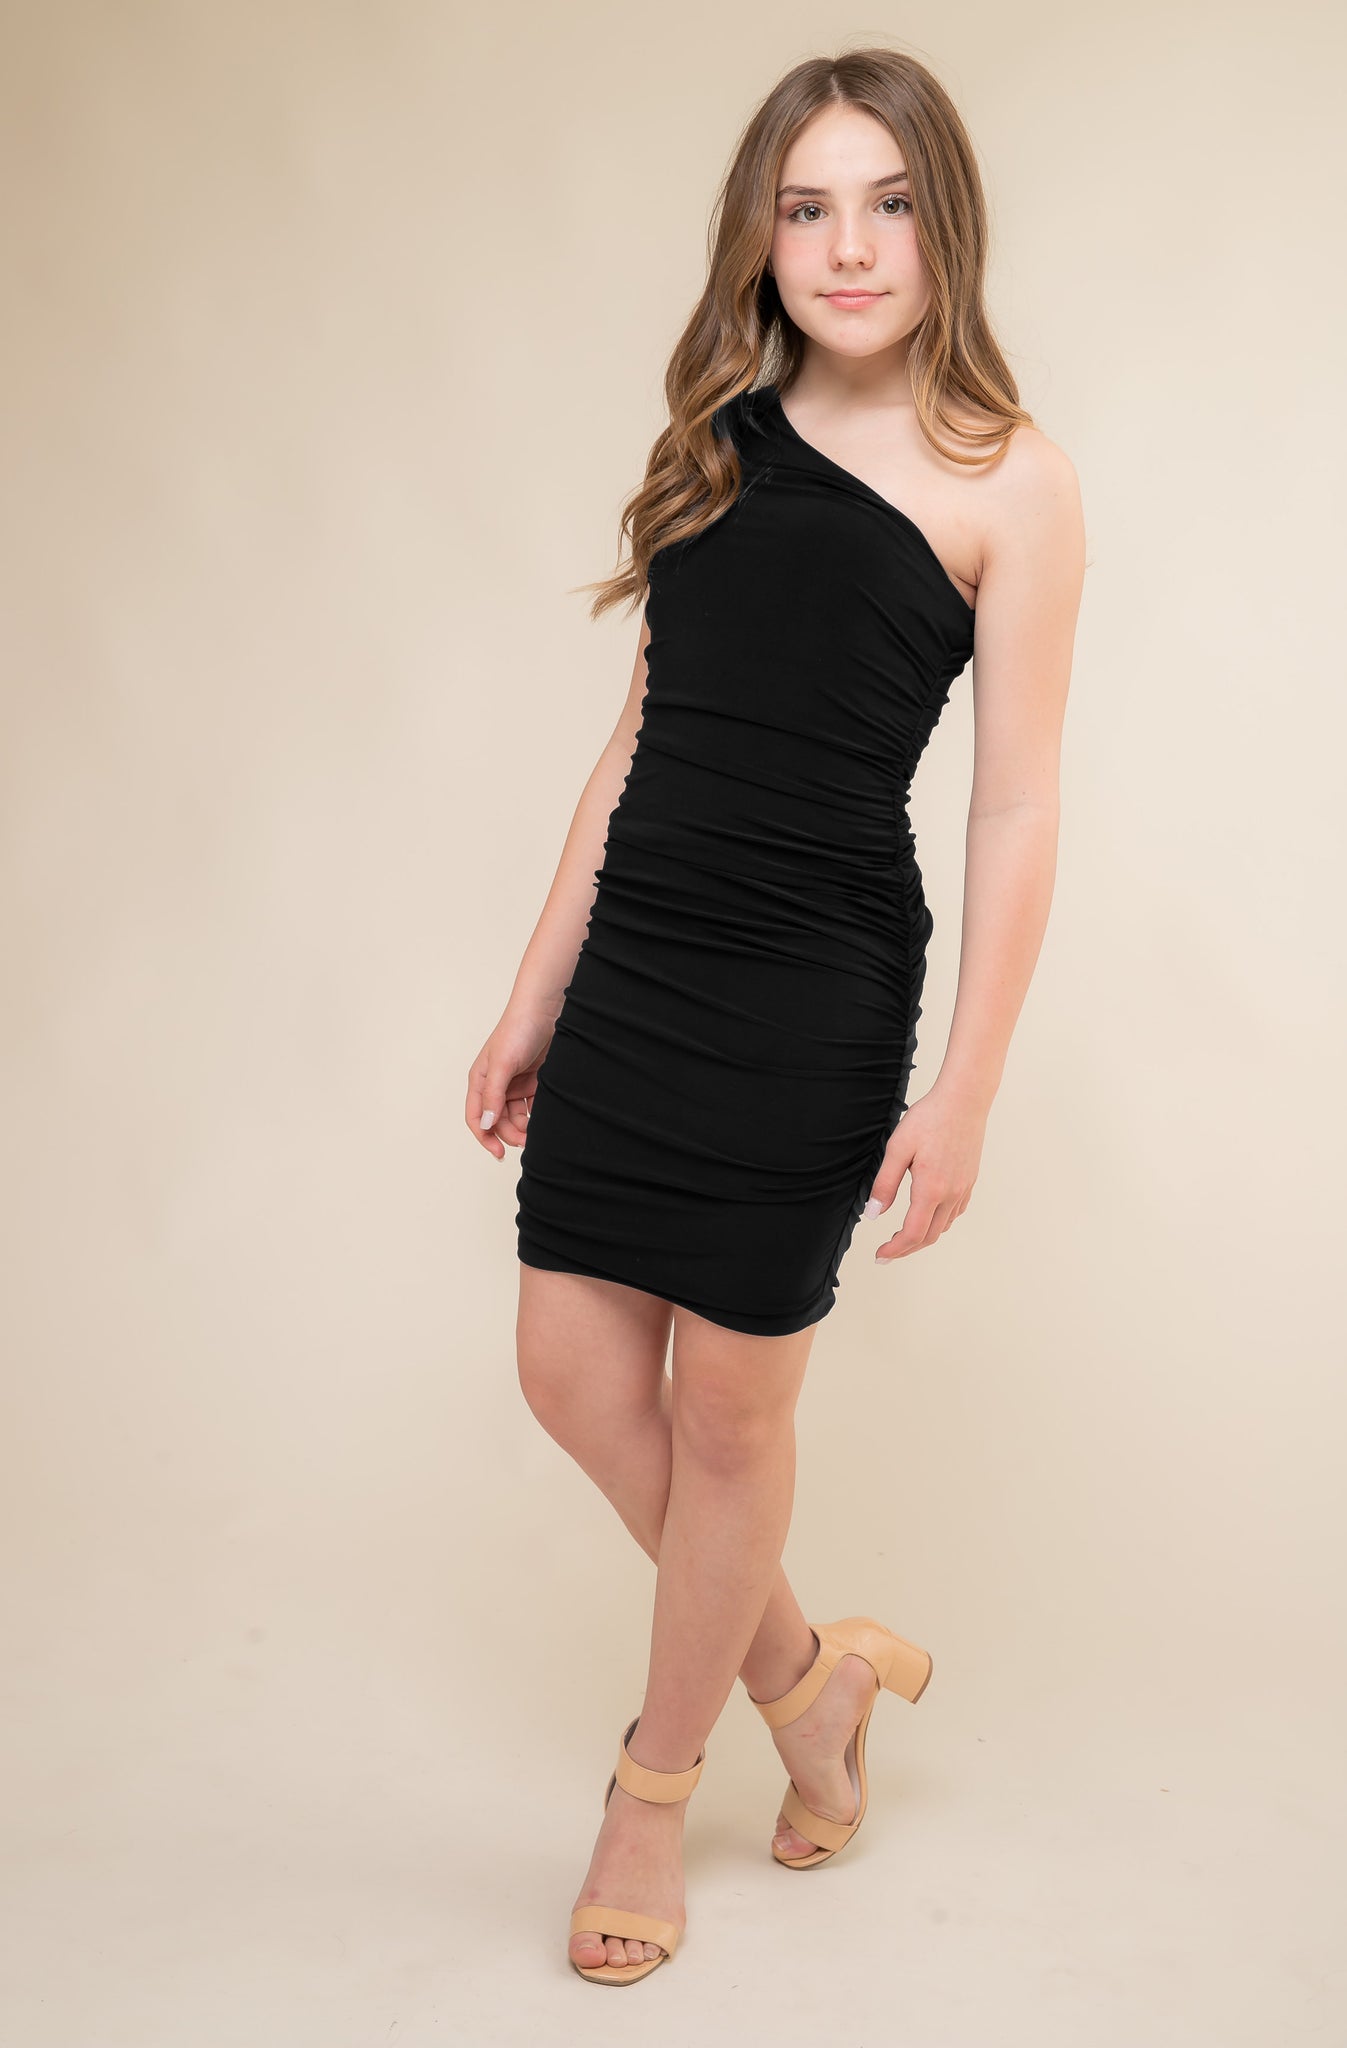 teens black dress